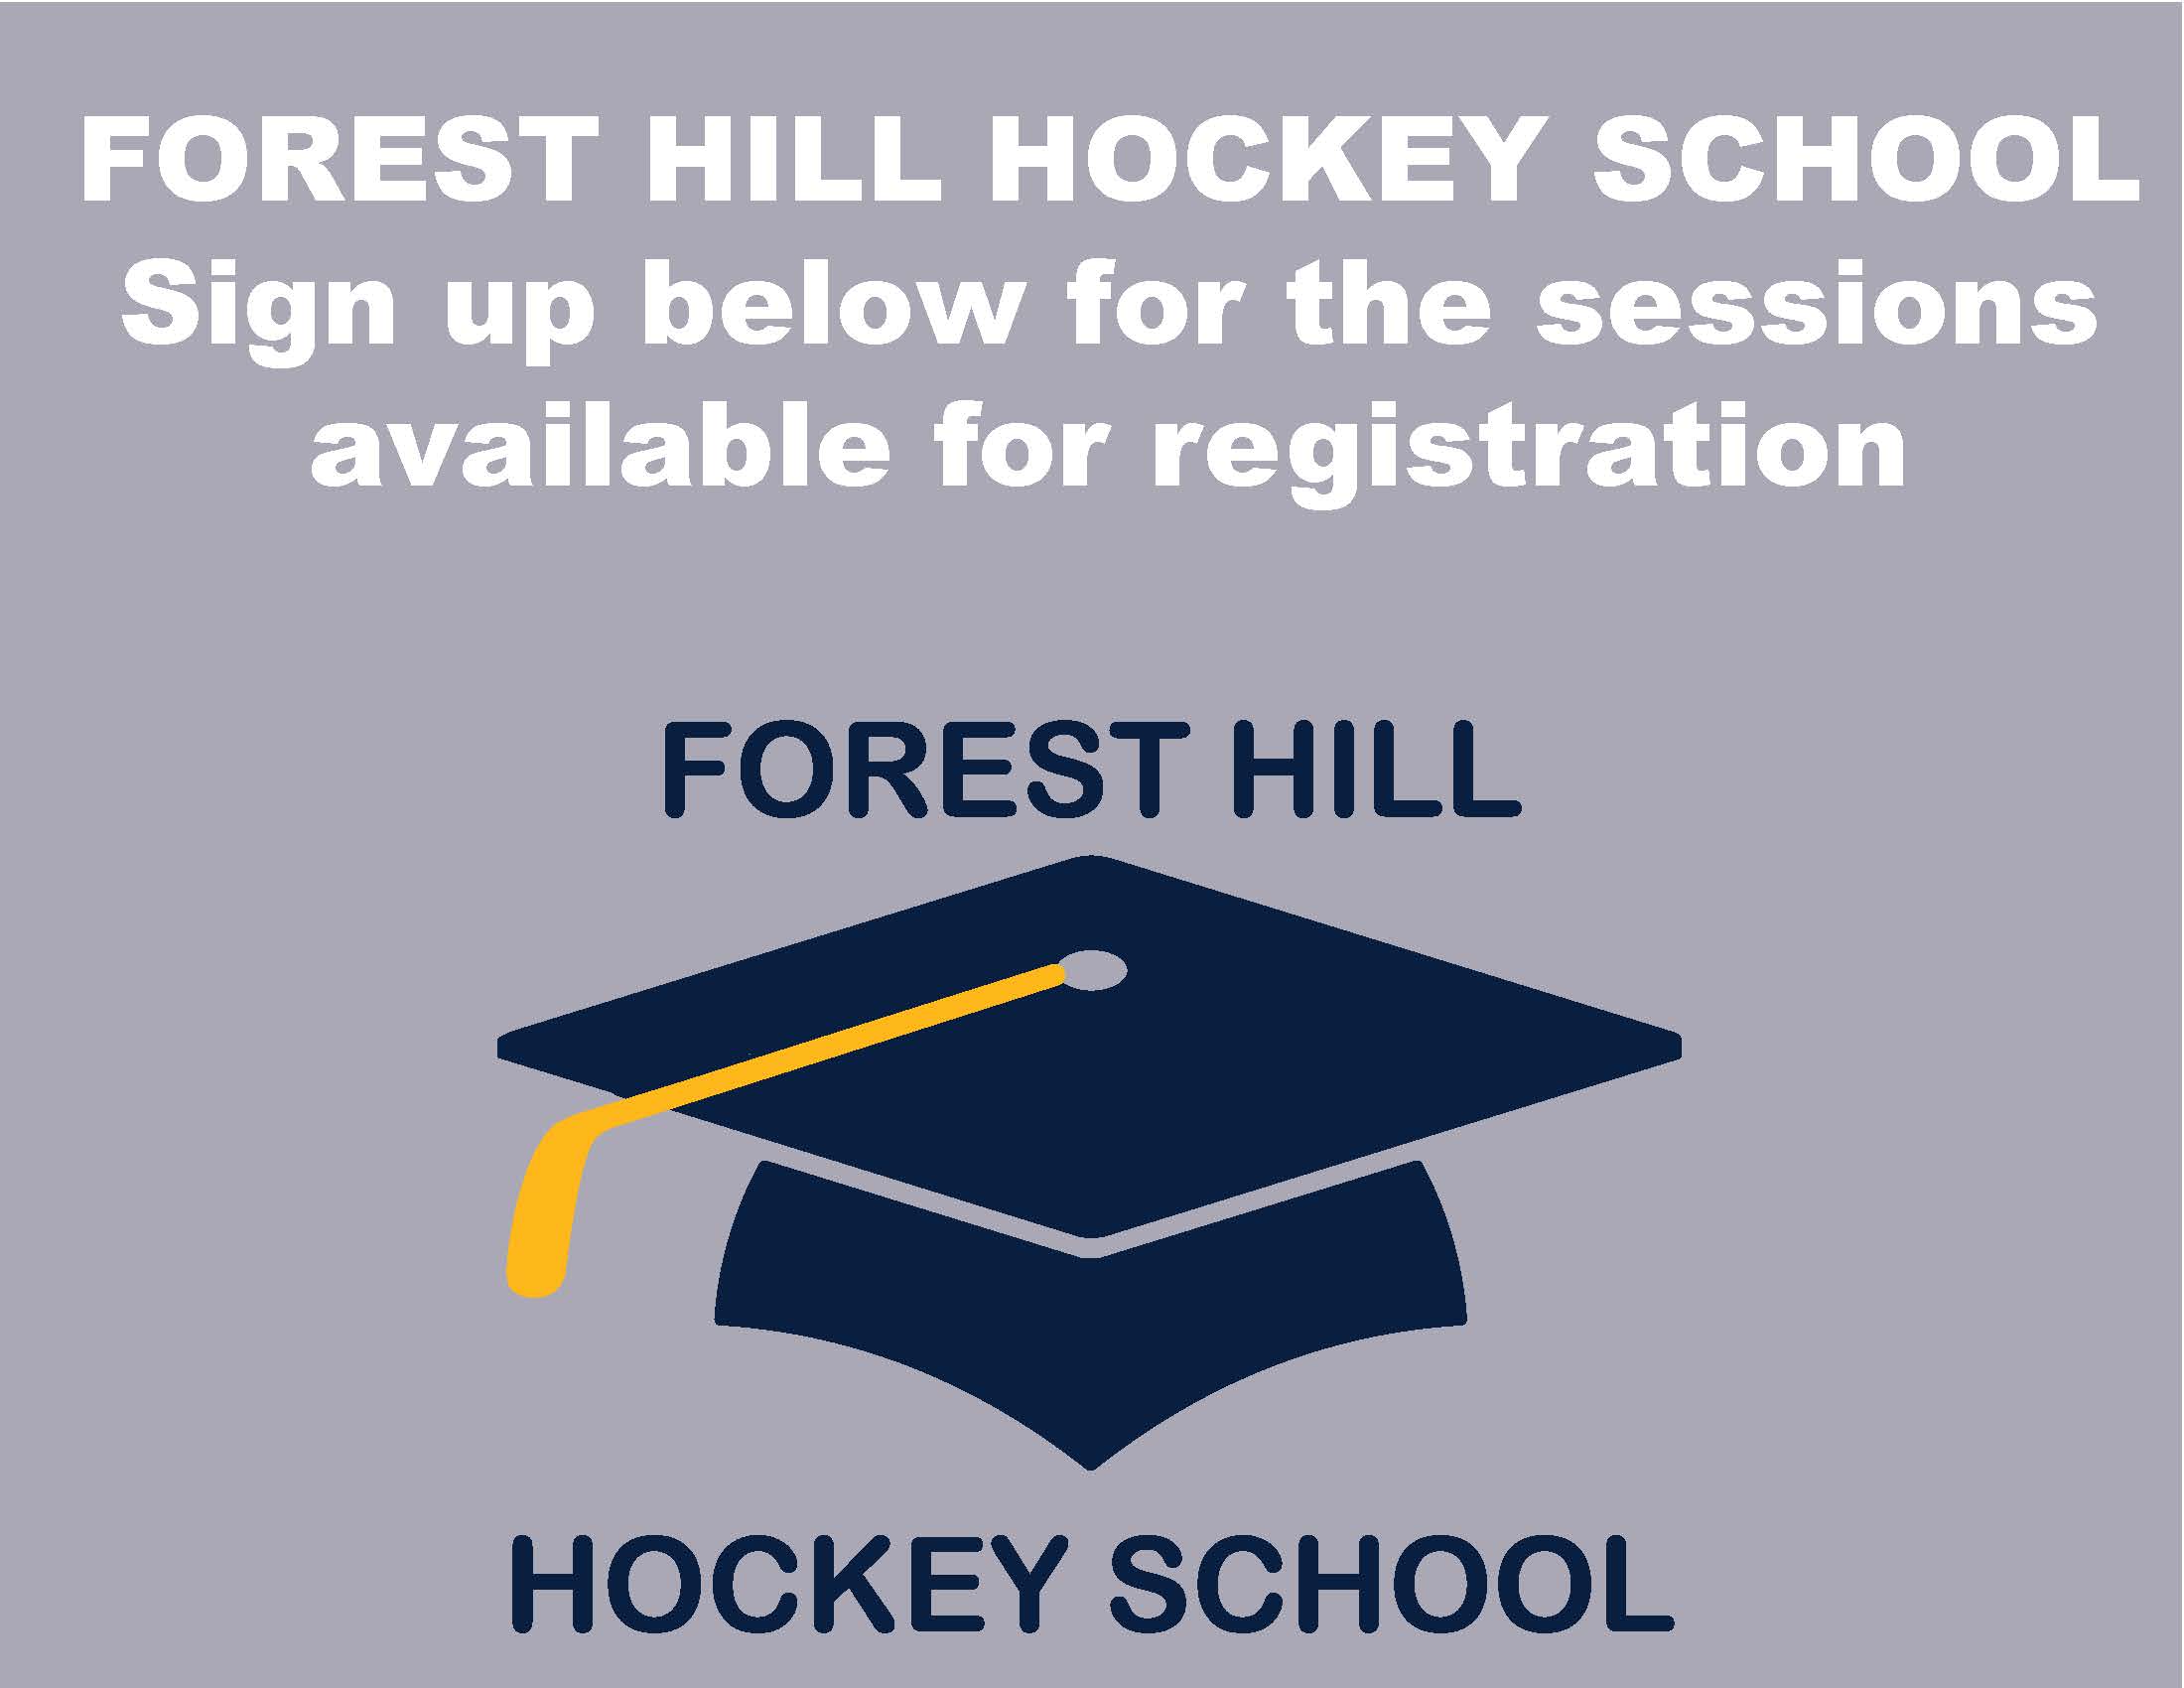 FH Hockey School - sessions below